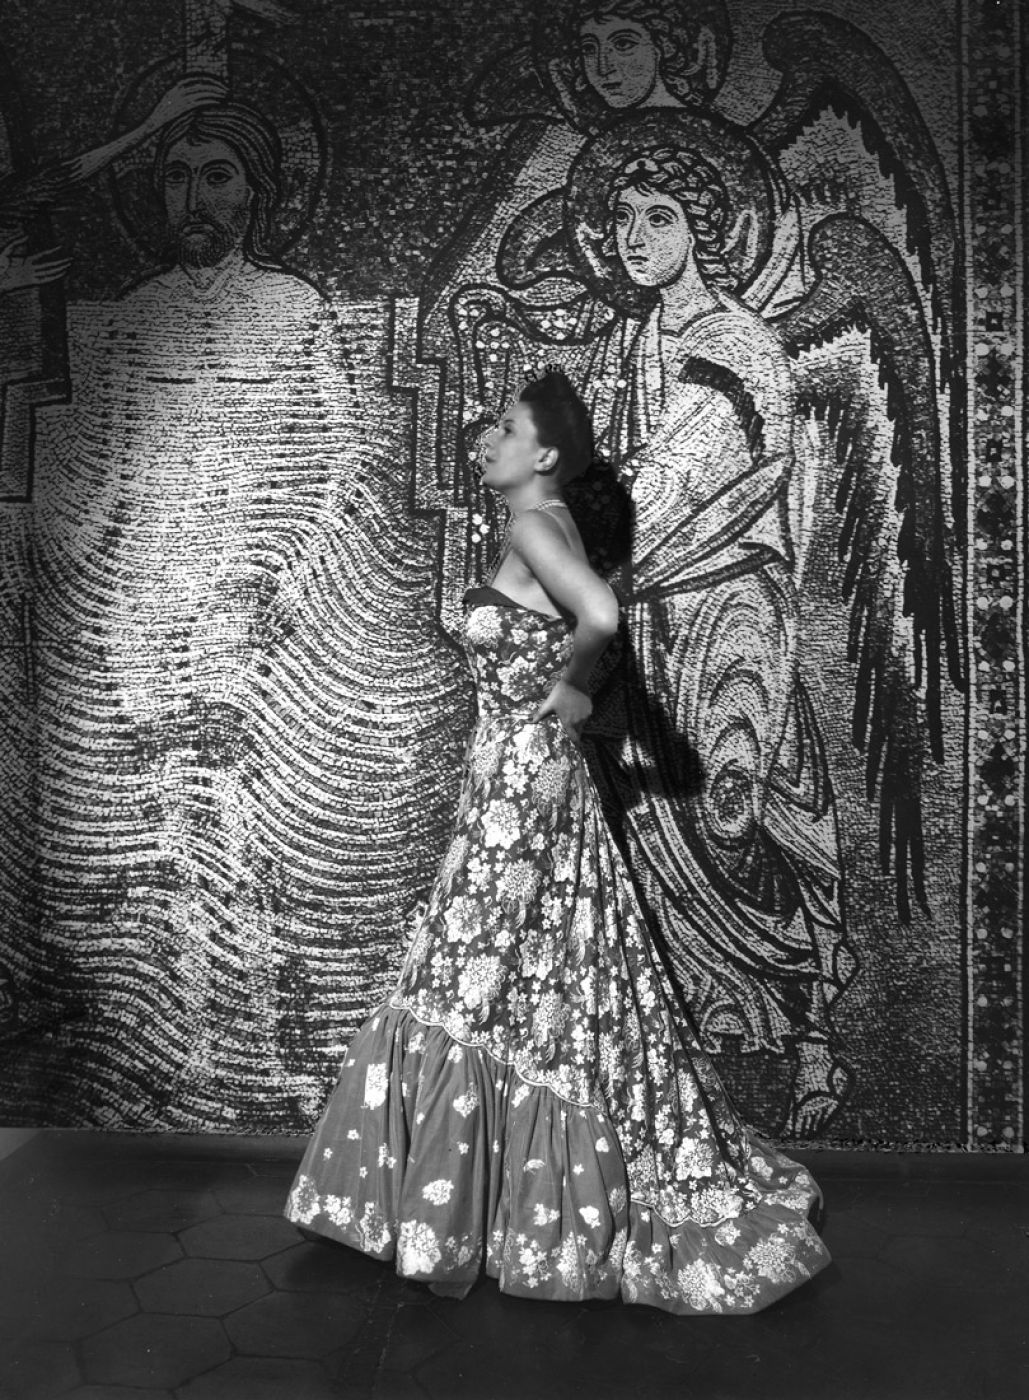 Pasquale De Antonis, “Modella con abito delle Sorelle Fontana”, 1948